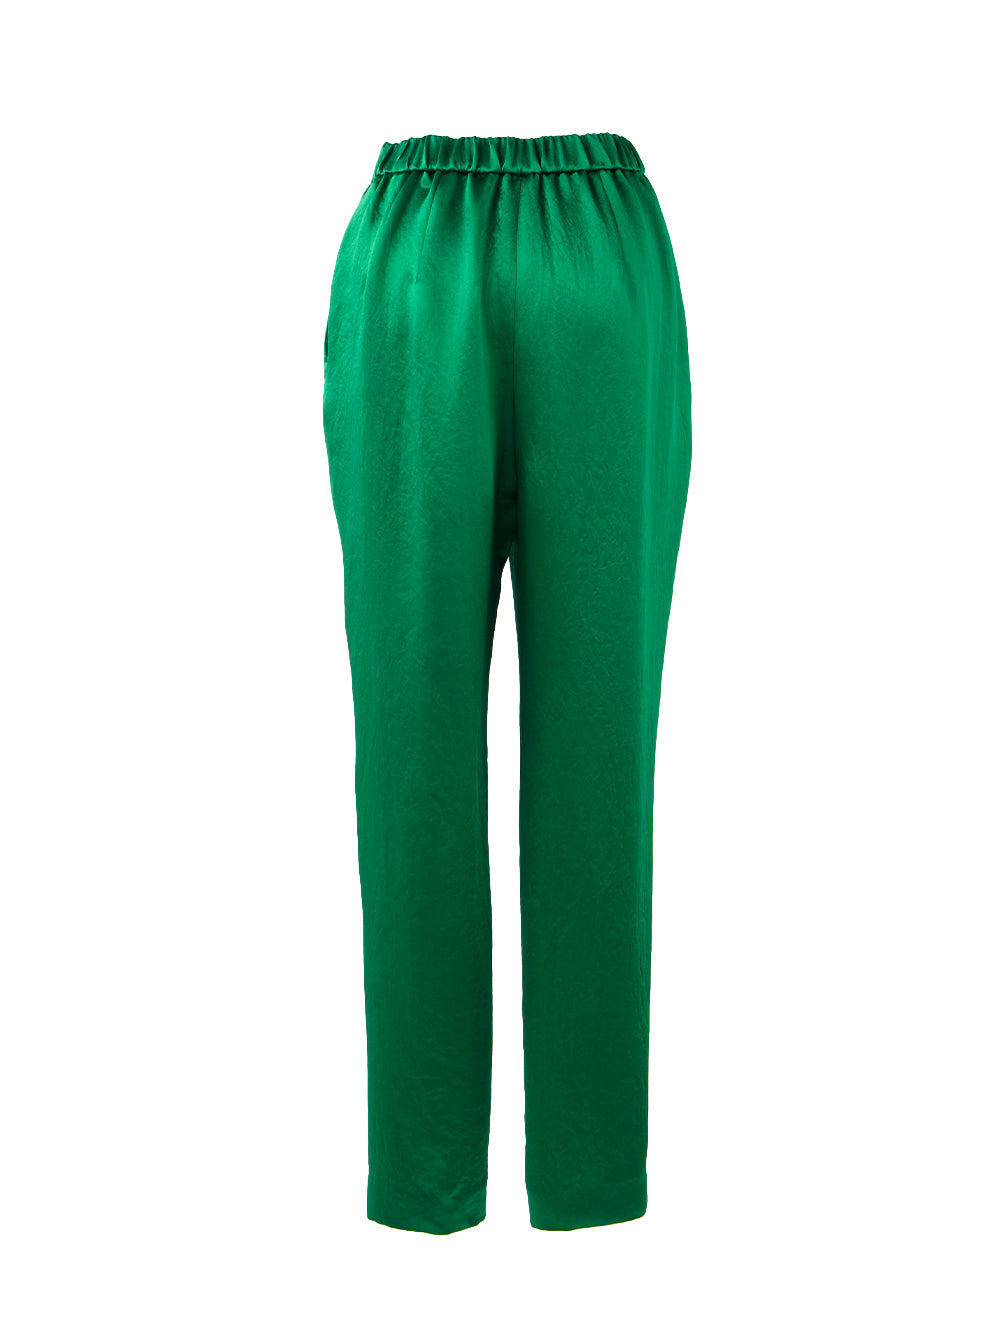 Green Relax Trouser (Green)